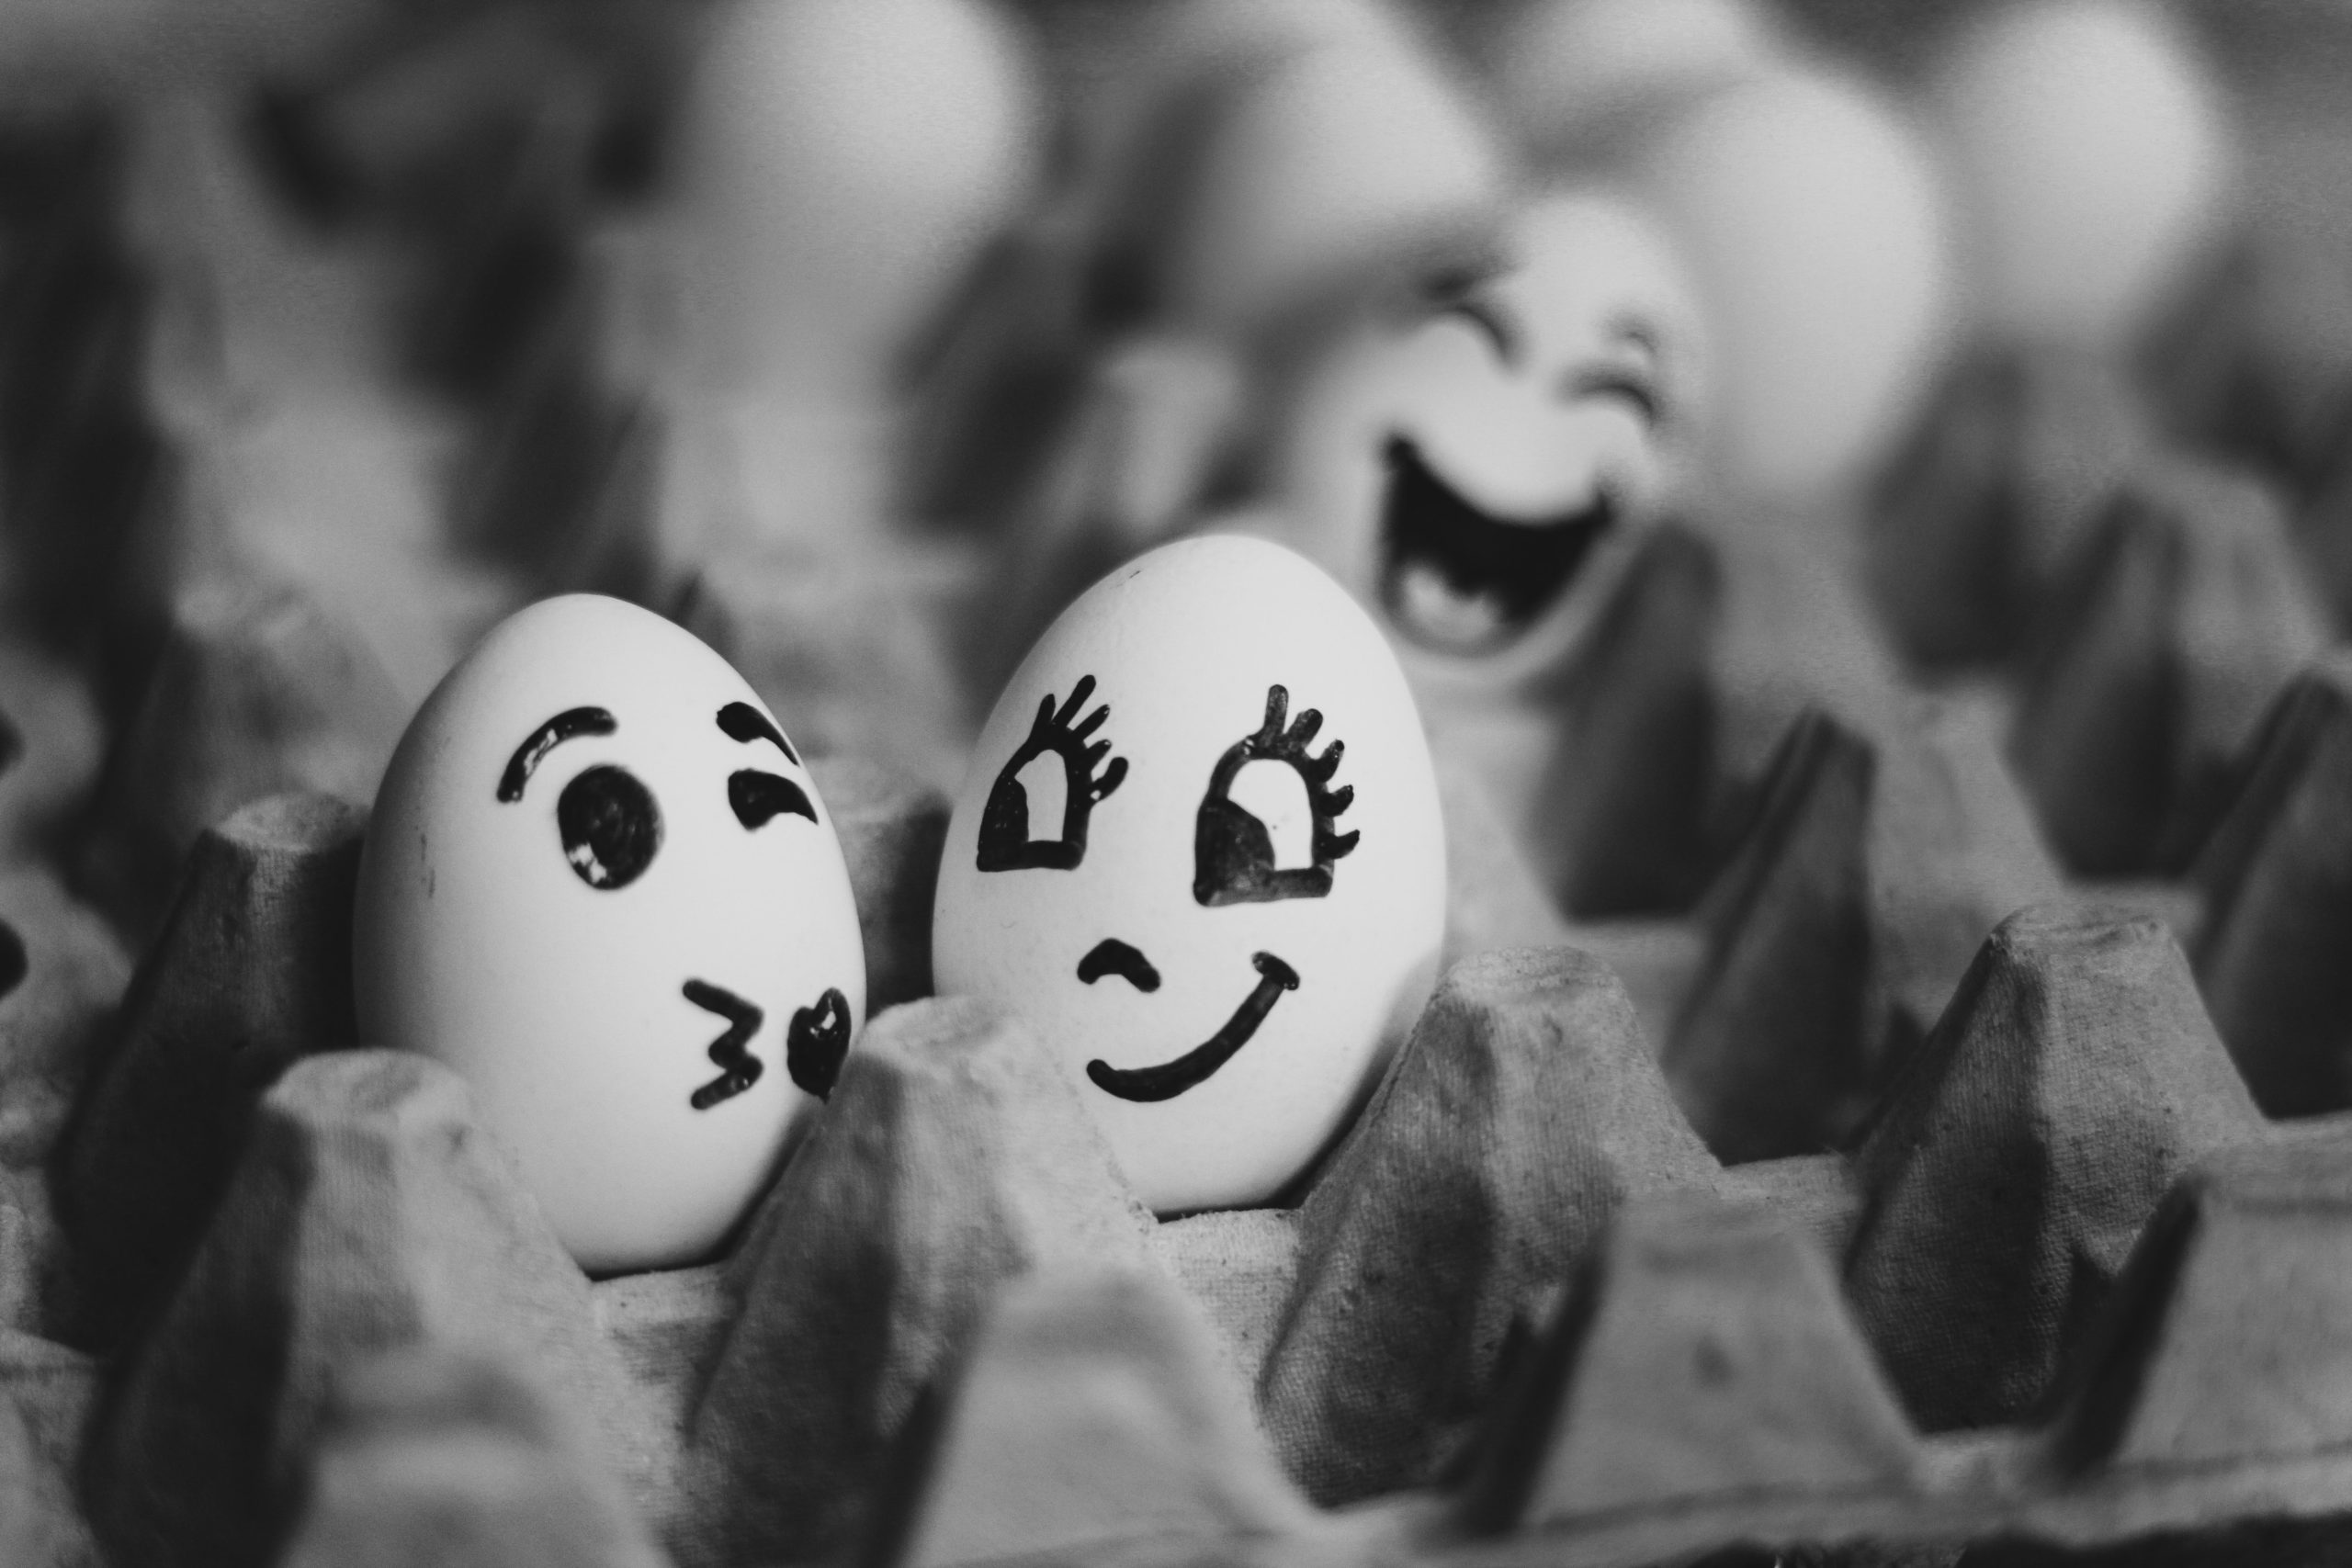 zwei Eier mit aufgemalten geischtern lächeln sich an